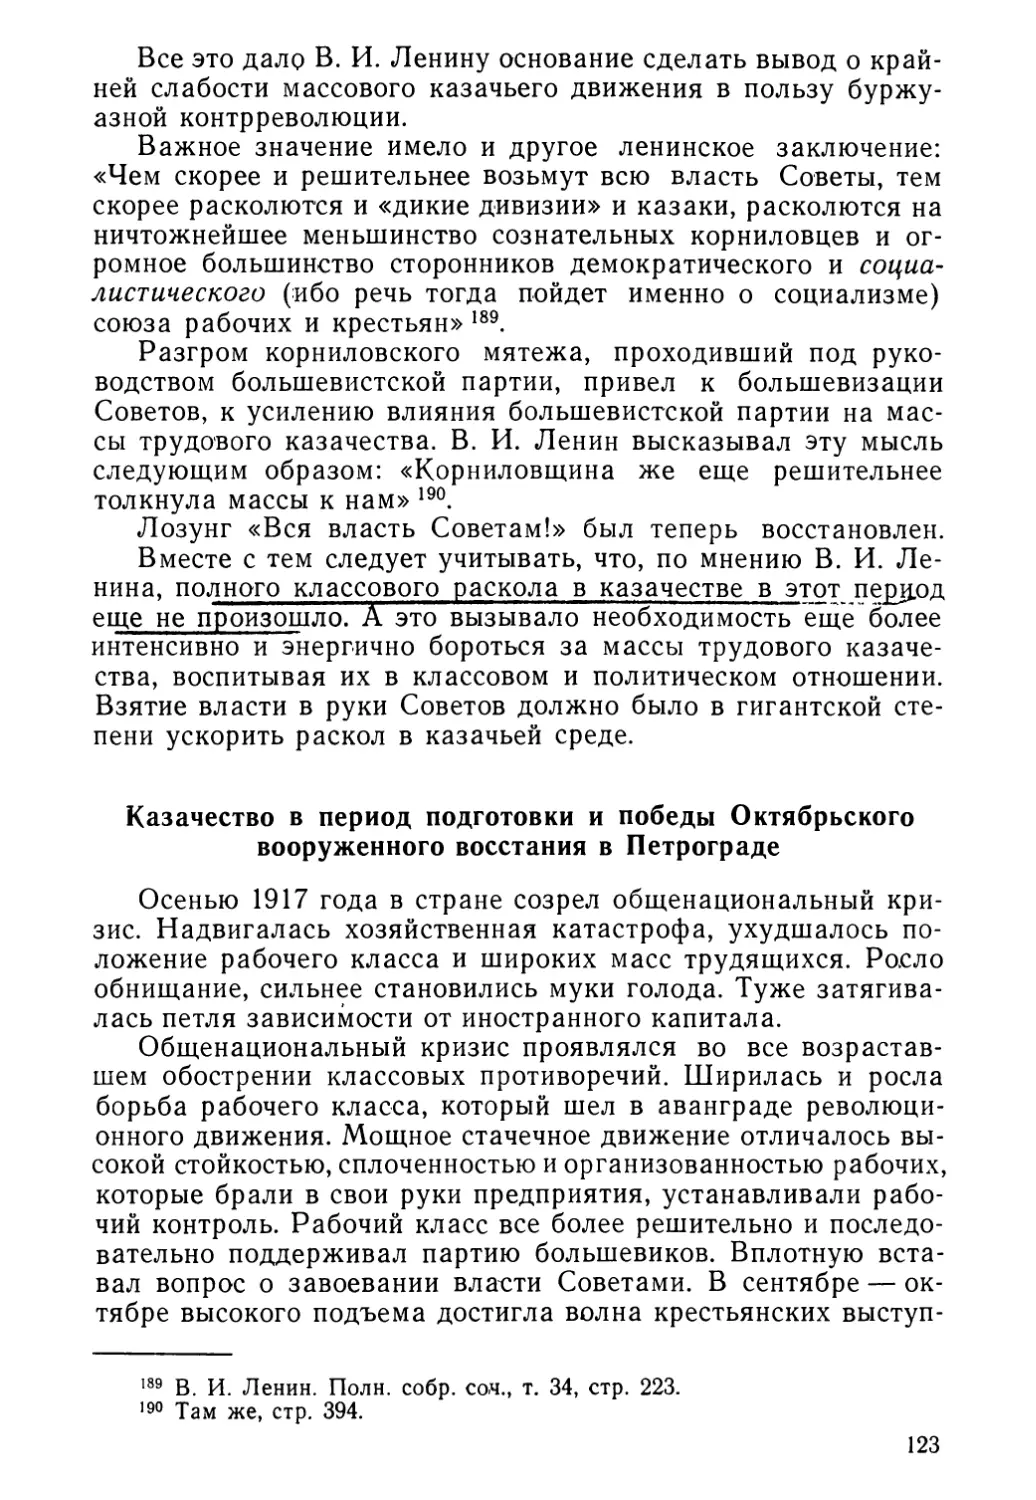 Казачество в период подготовки и победы Октябрьского вооруженного восстания в Петрограде